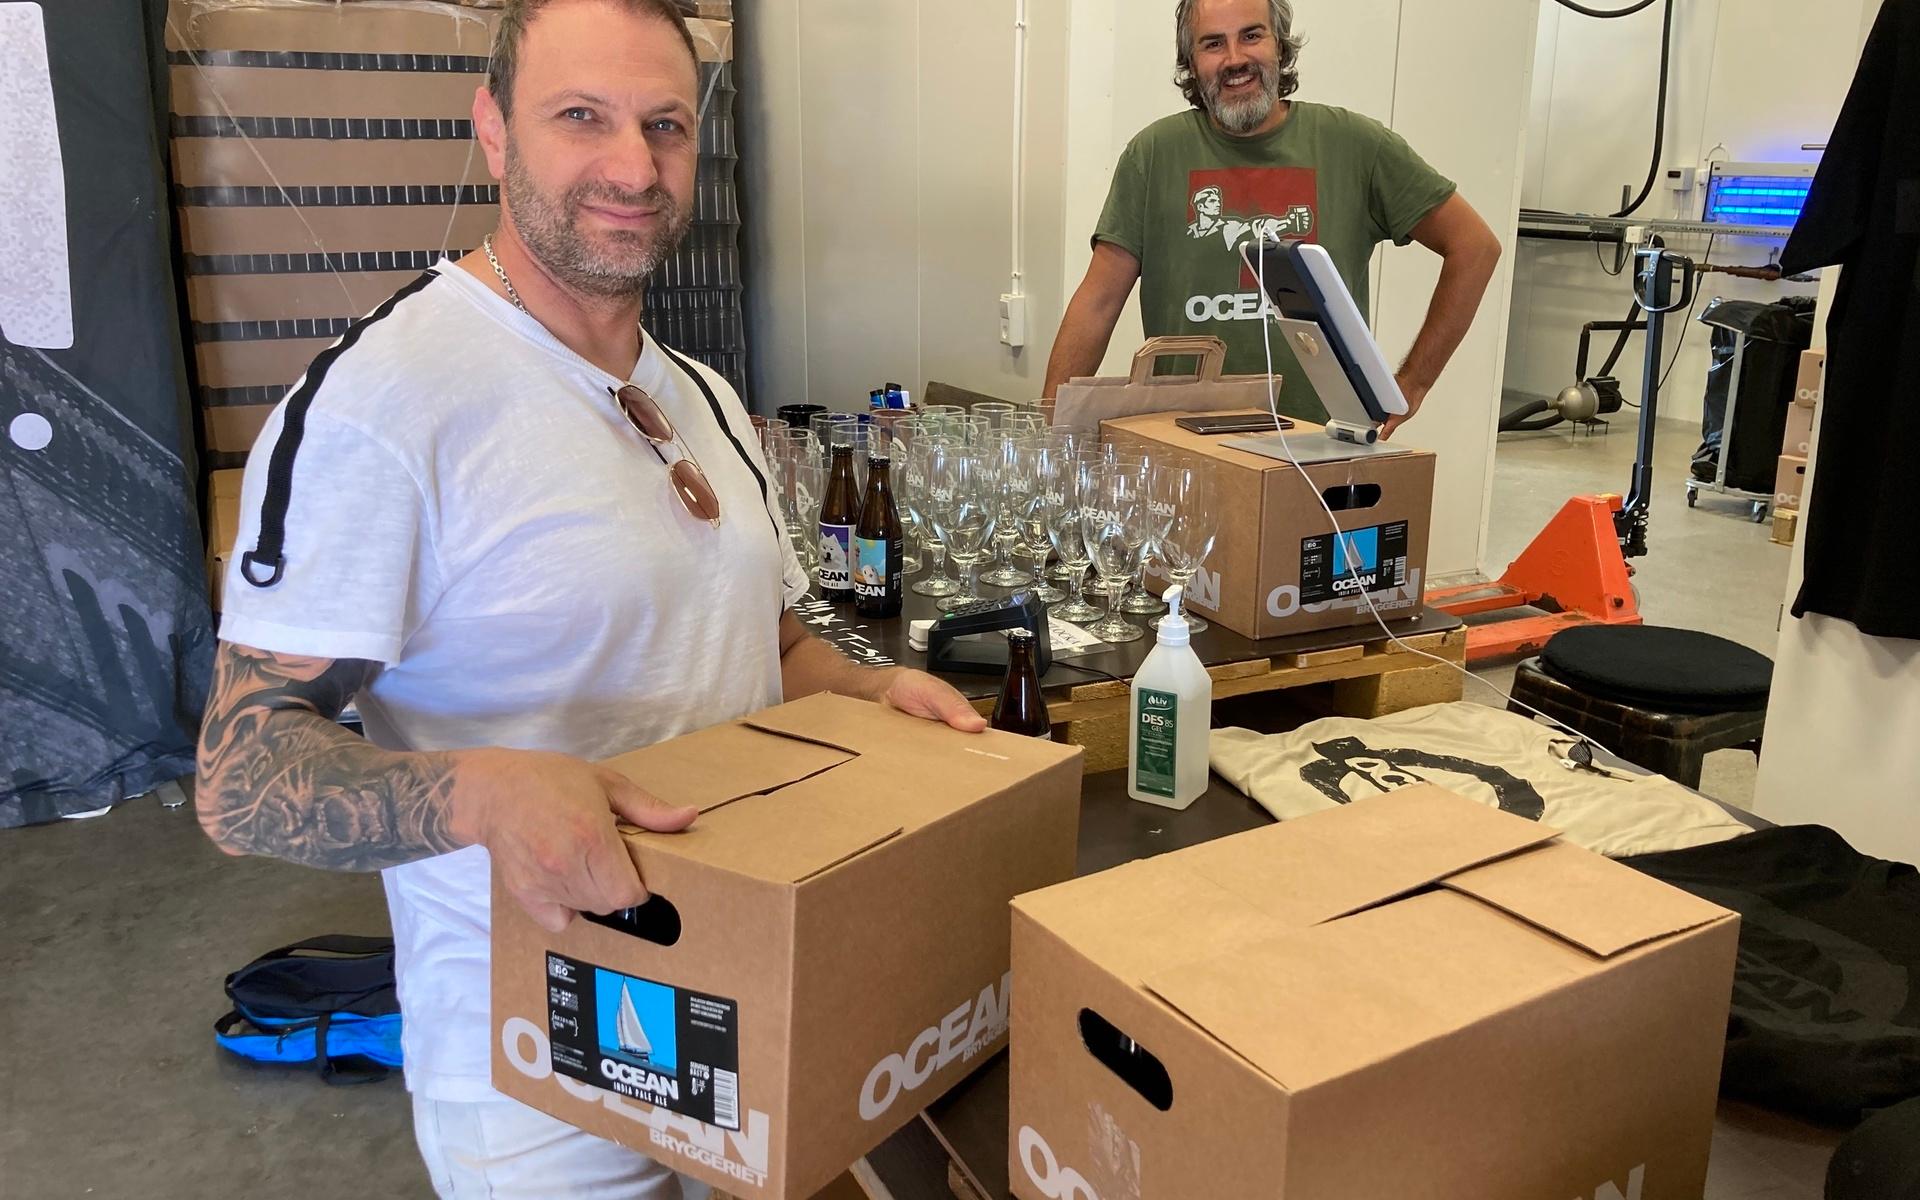 Ali Walinejad köper några lådor under överinseende av Rodrigo Wilner, vd och grundare av Oceanbryggeriet.